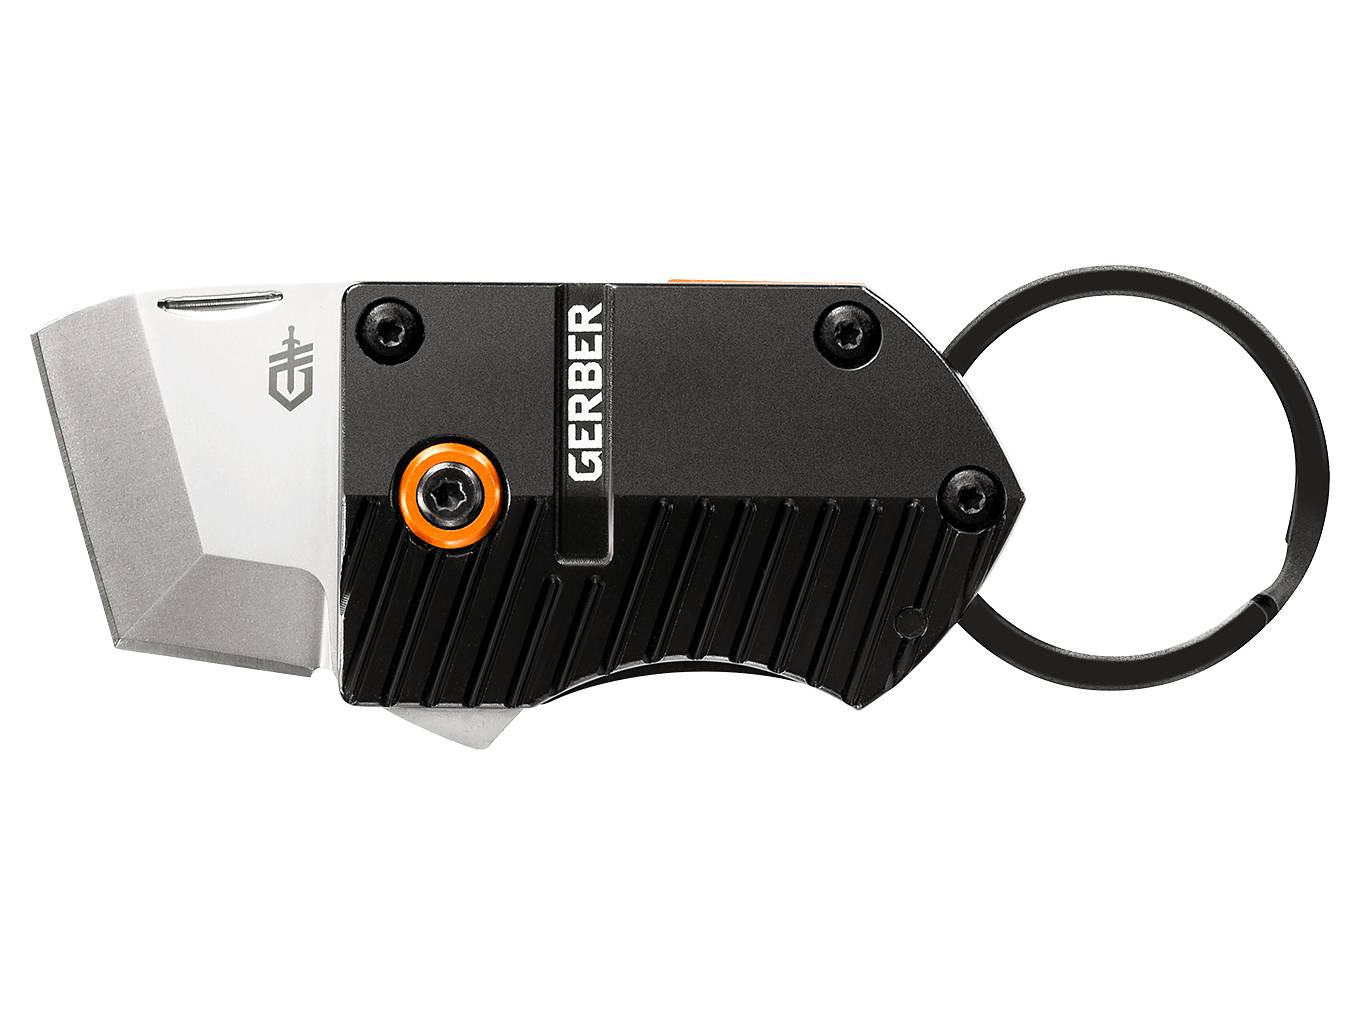 Key Note är en kniv med nyckelhållare, eller nyckelhållare med kniv? Du bestämmer!